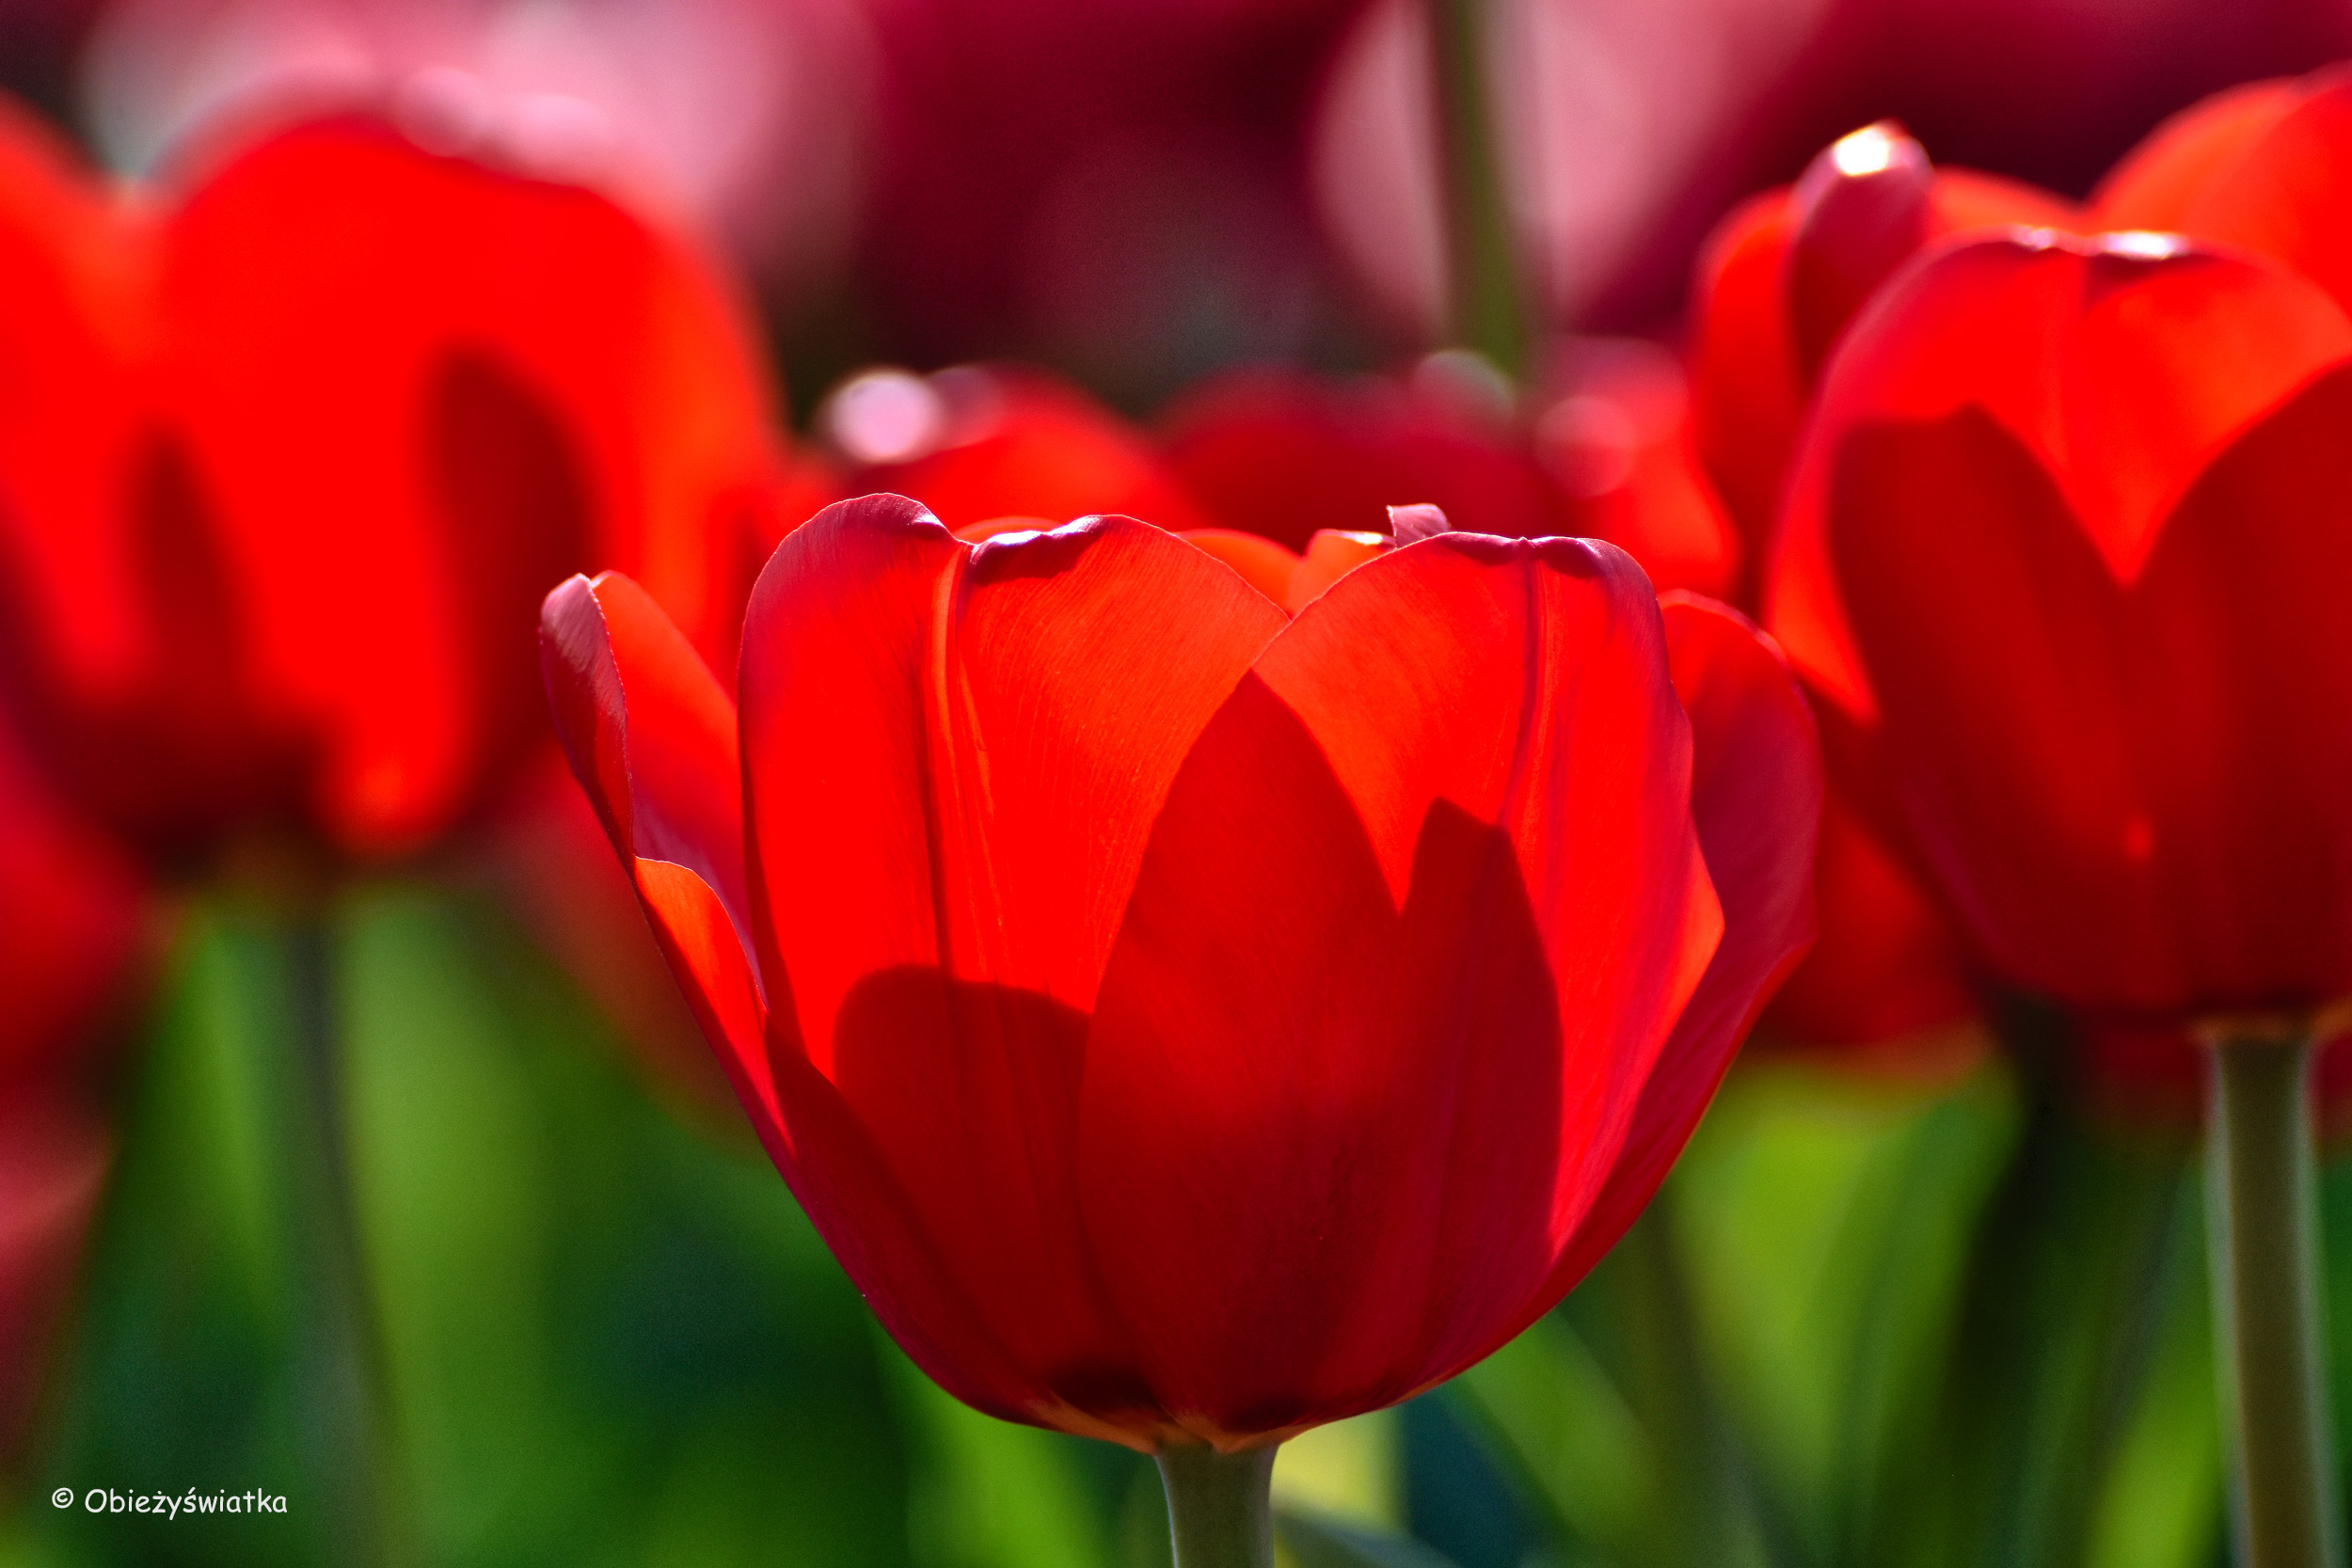 Tulipanowe pola w Holandii - krwista czerwień